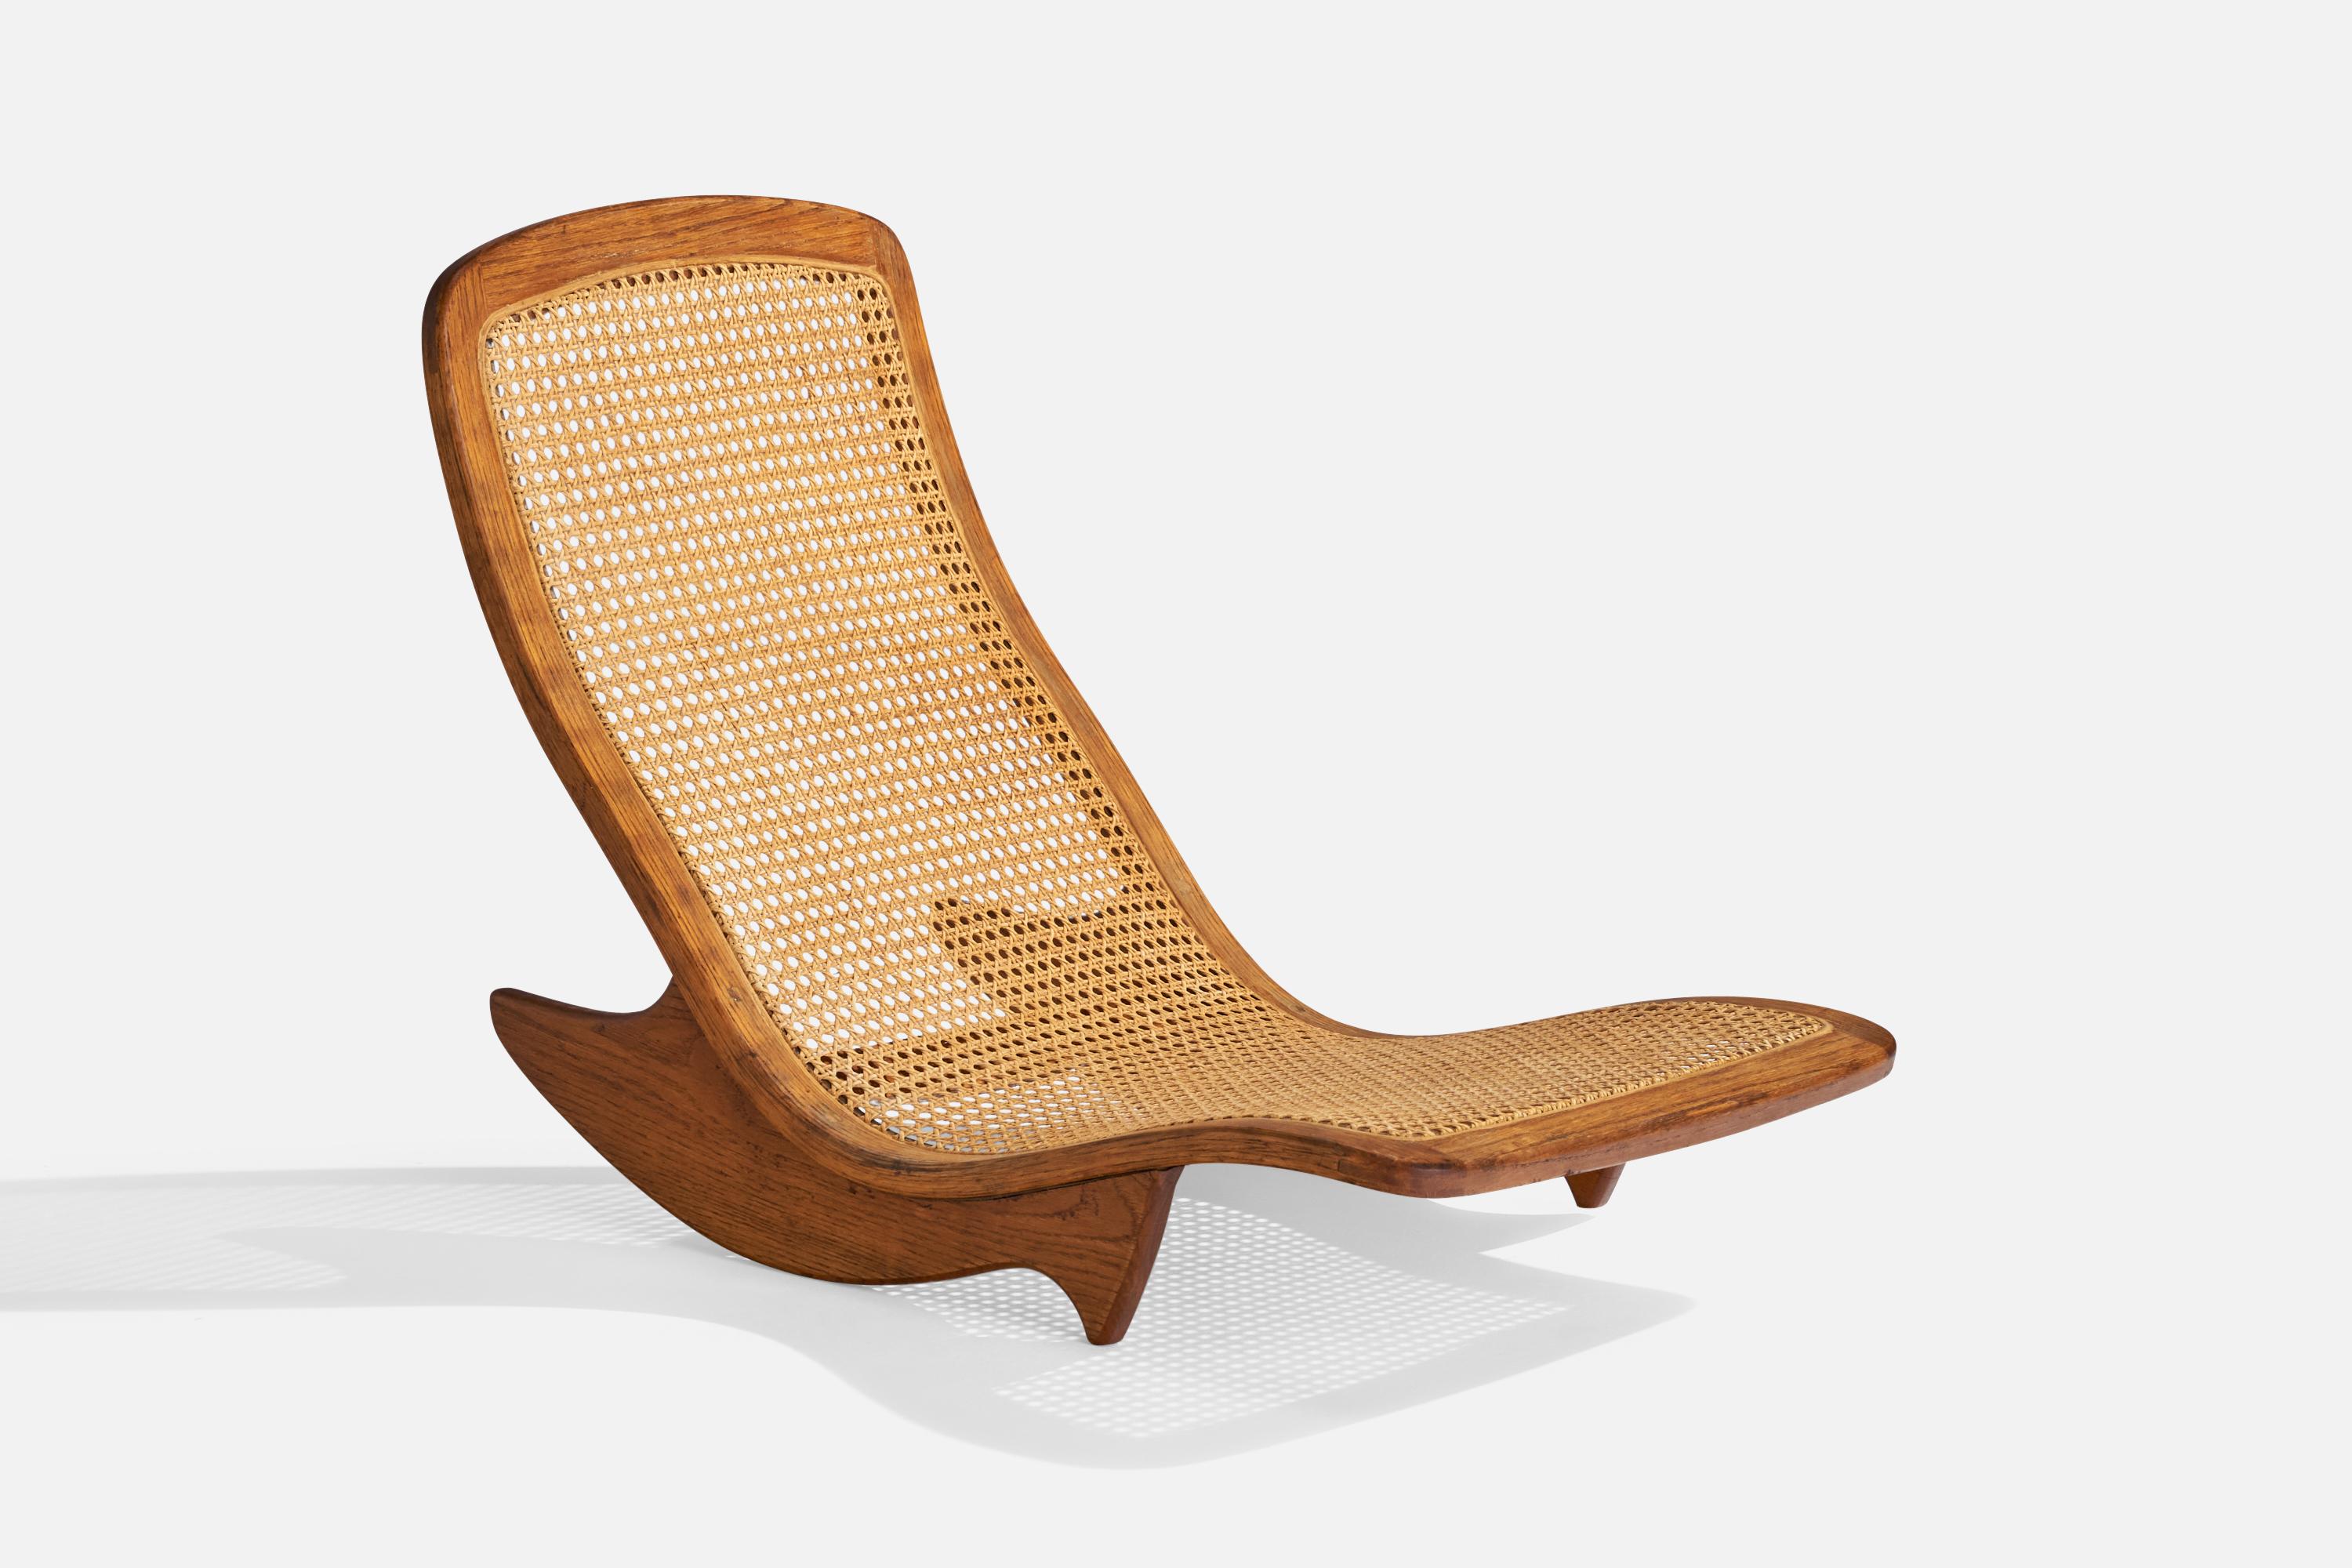 Ein niedriger Schaukelstuhl oder eine Chaiselongue aus Teakholz und Rattan, entworfen und hergestellt von Steve Rieman, USA, um 1976

Sitzhöhe 5